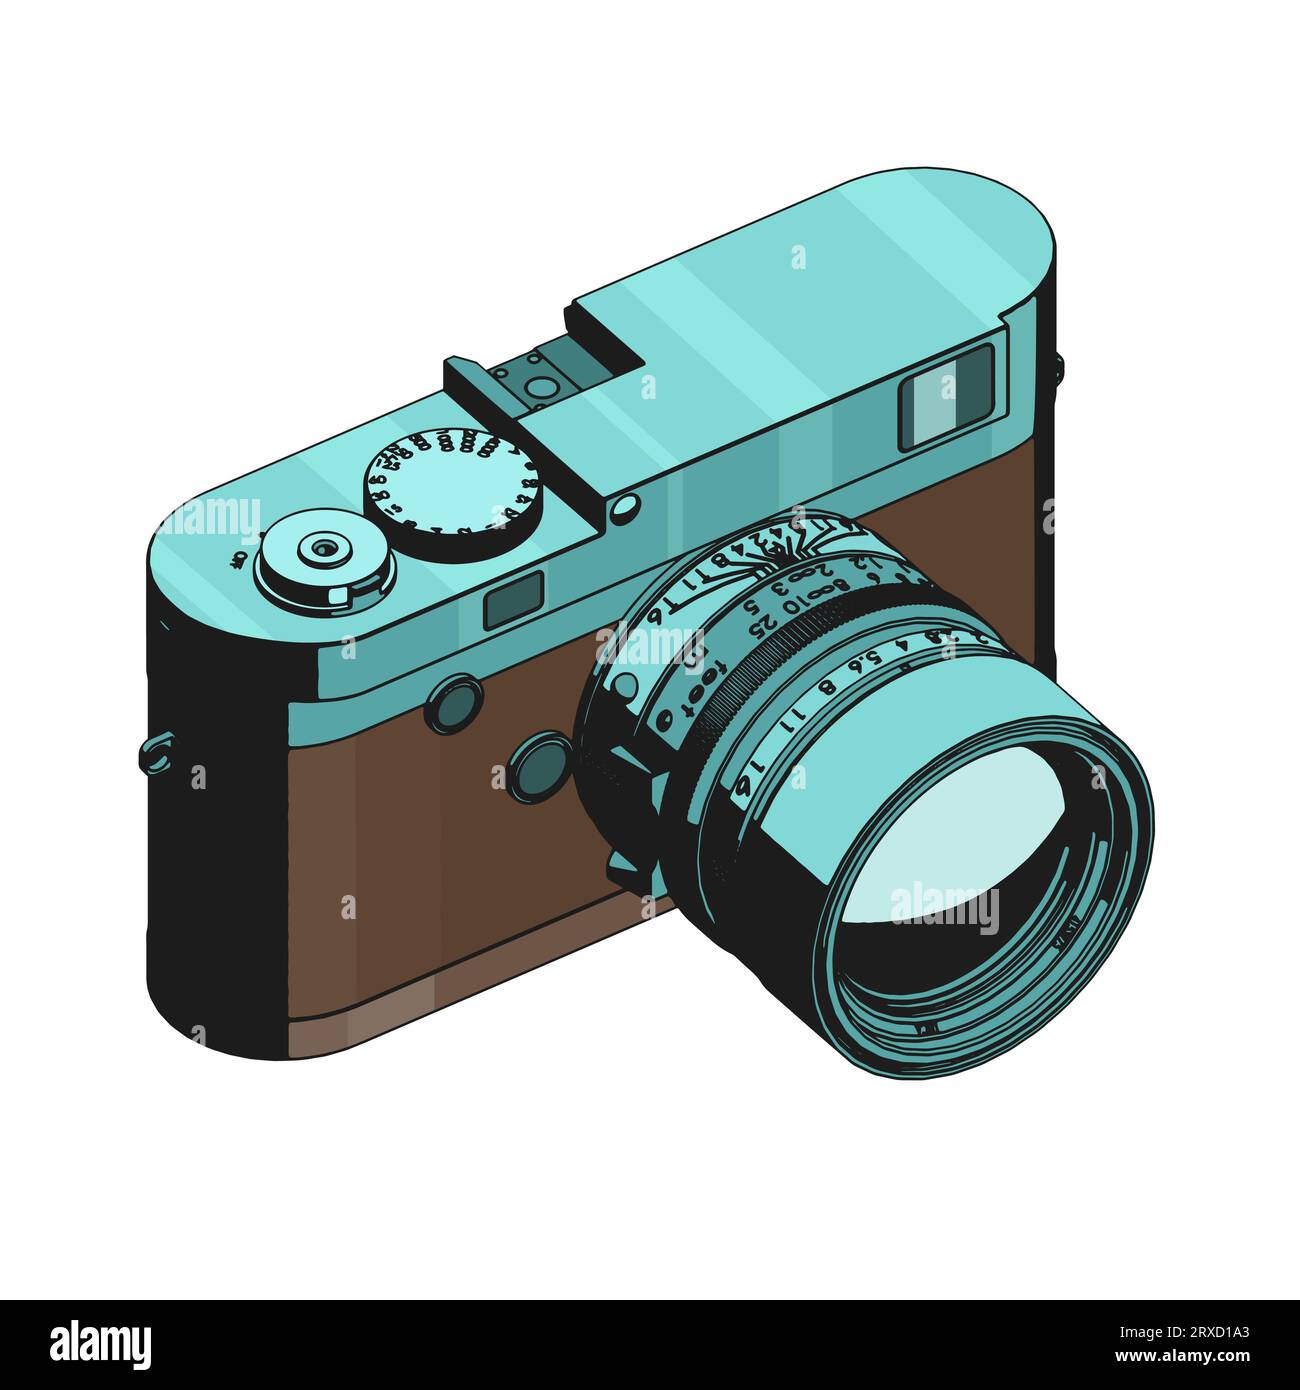 Illustrazione vettoriale stilizzata della fotocamera mirrorless con telemetro Illustrazione Vettoriale